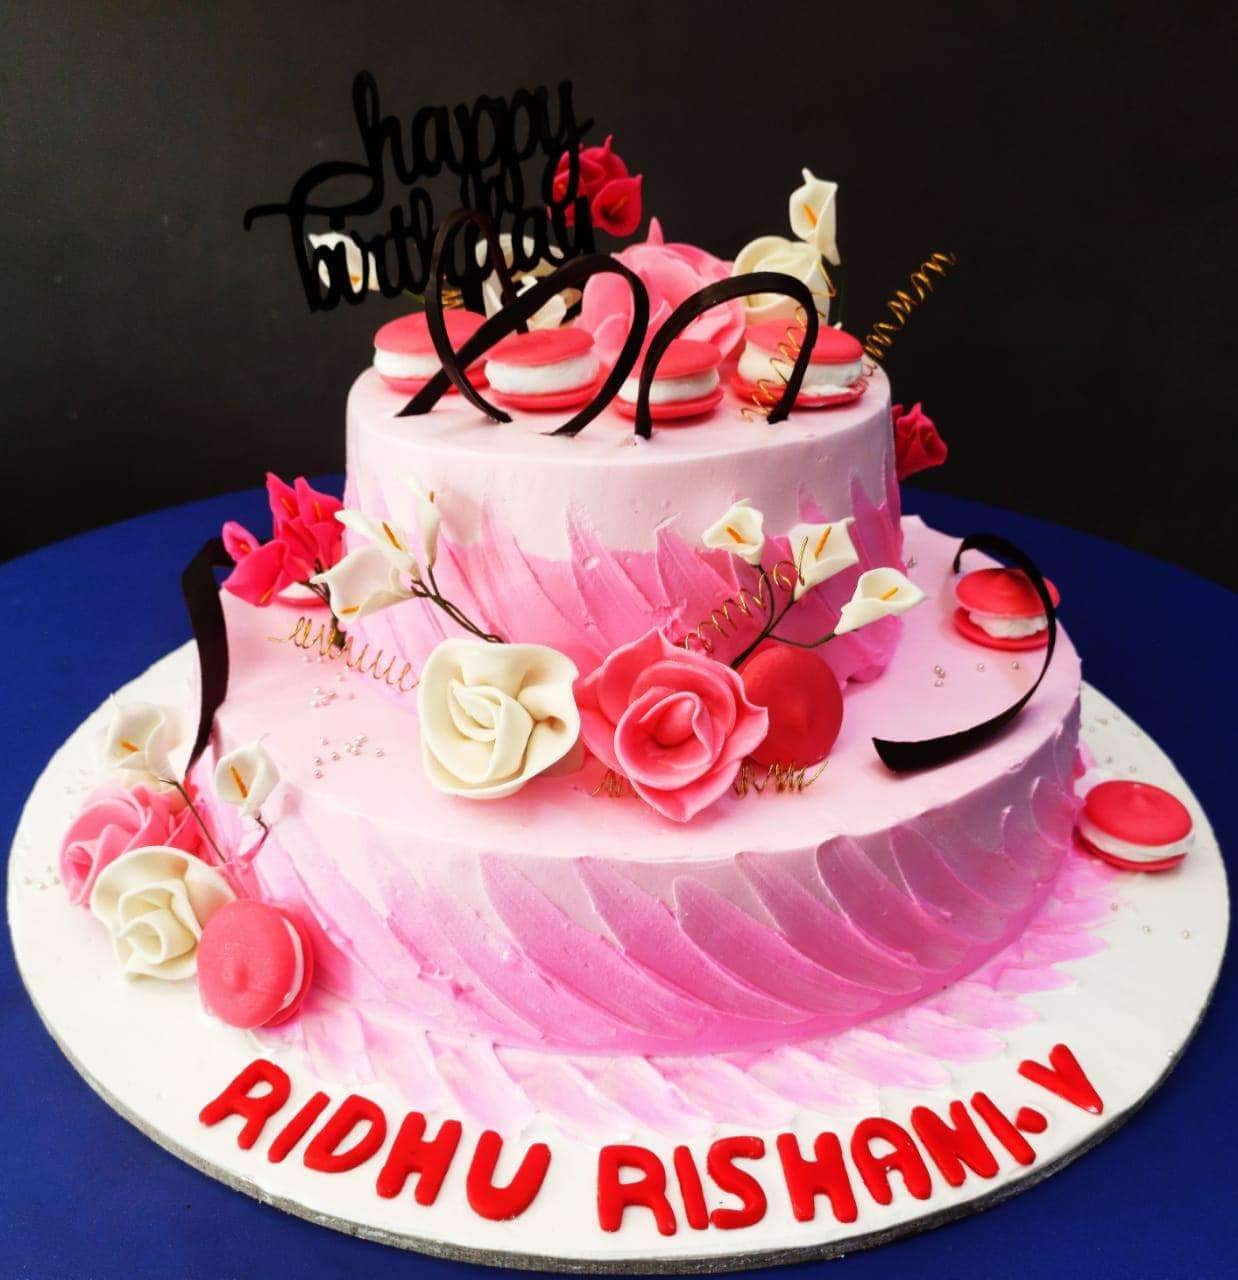 Happy Birthday Rashmi - YouTube